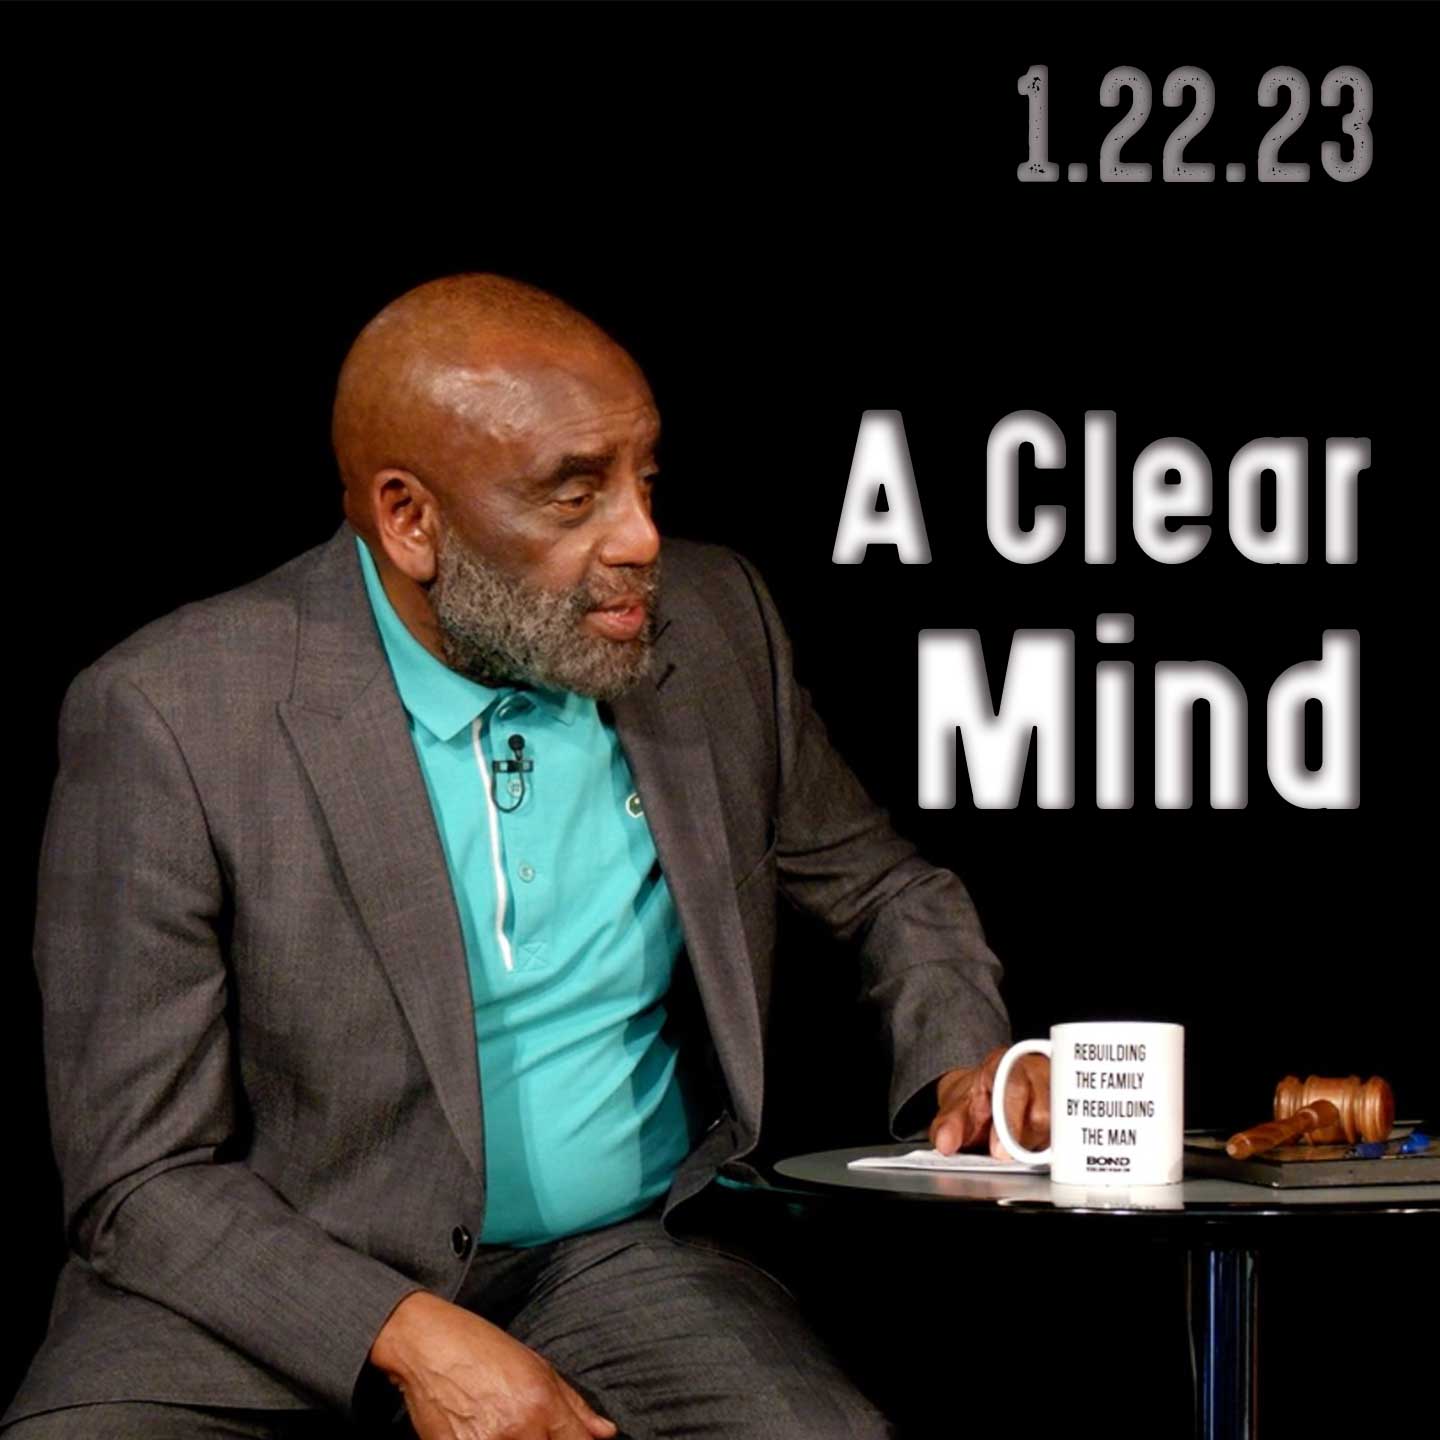 A Clear Mind: Church 1/22/23